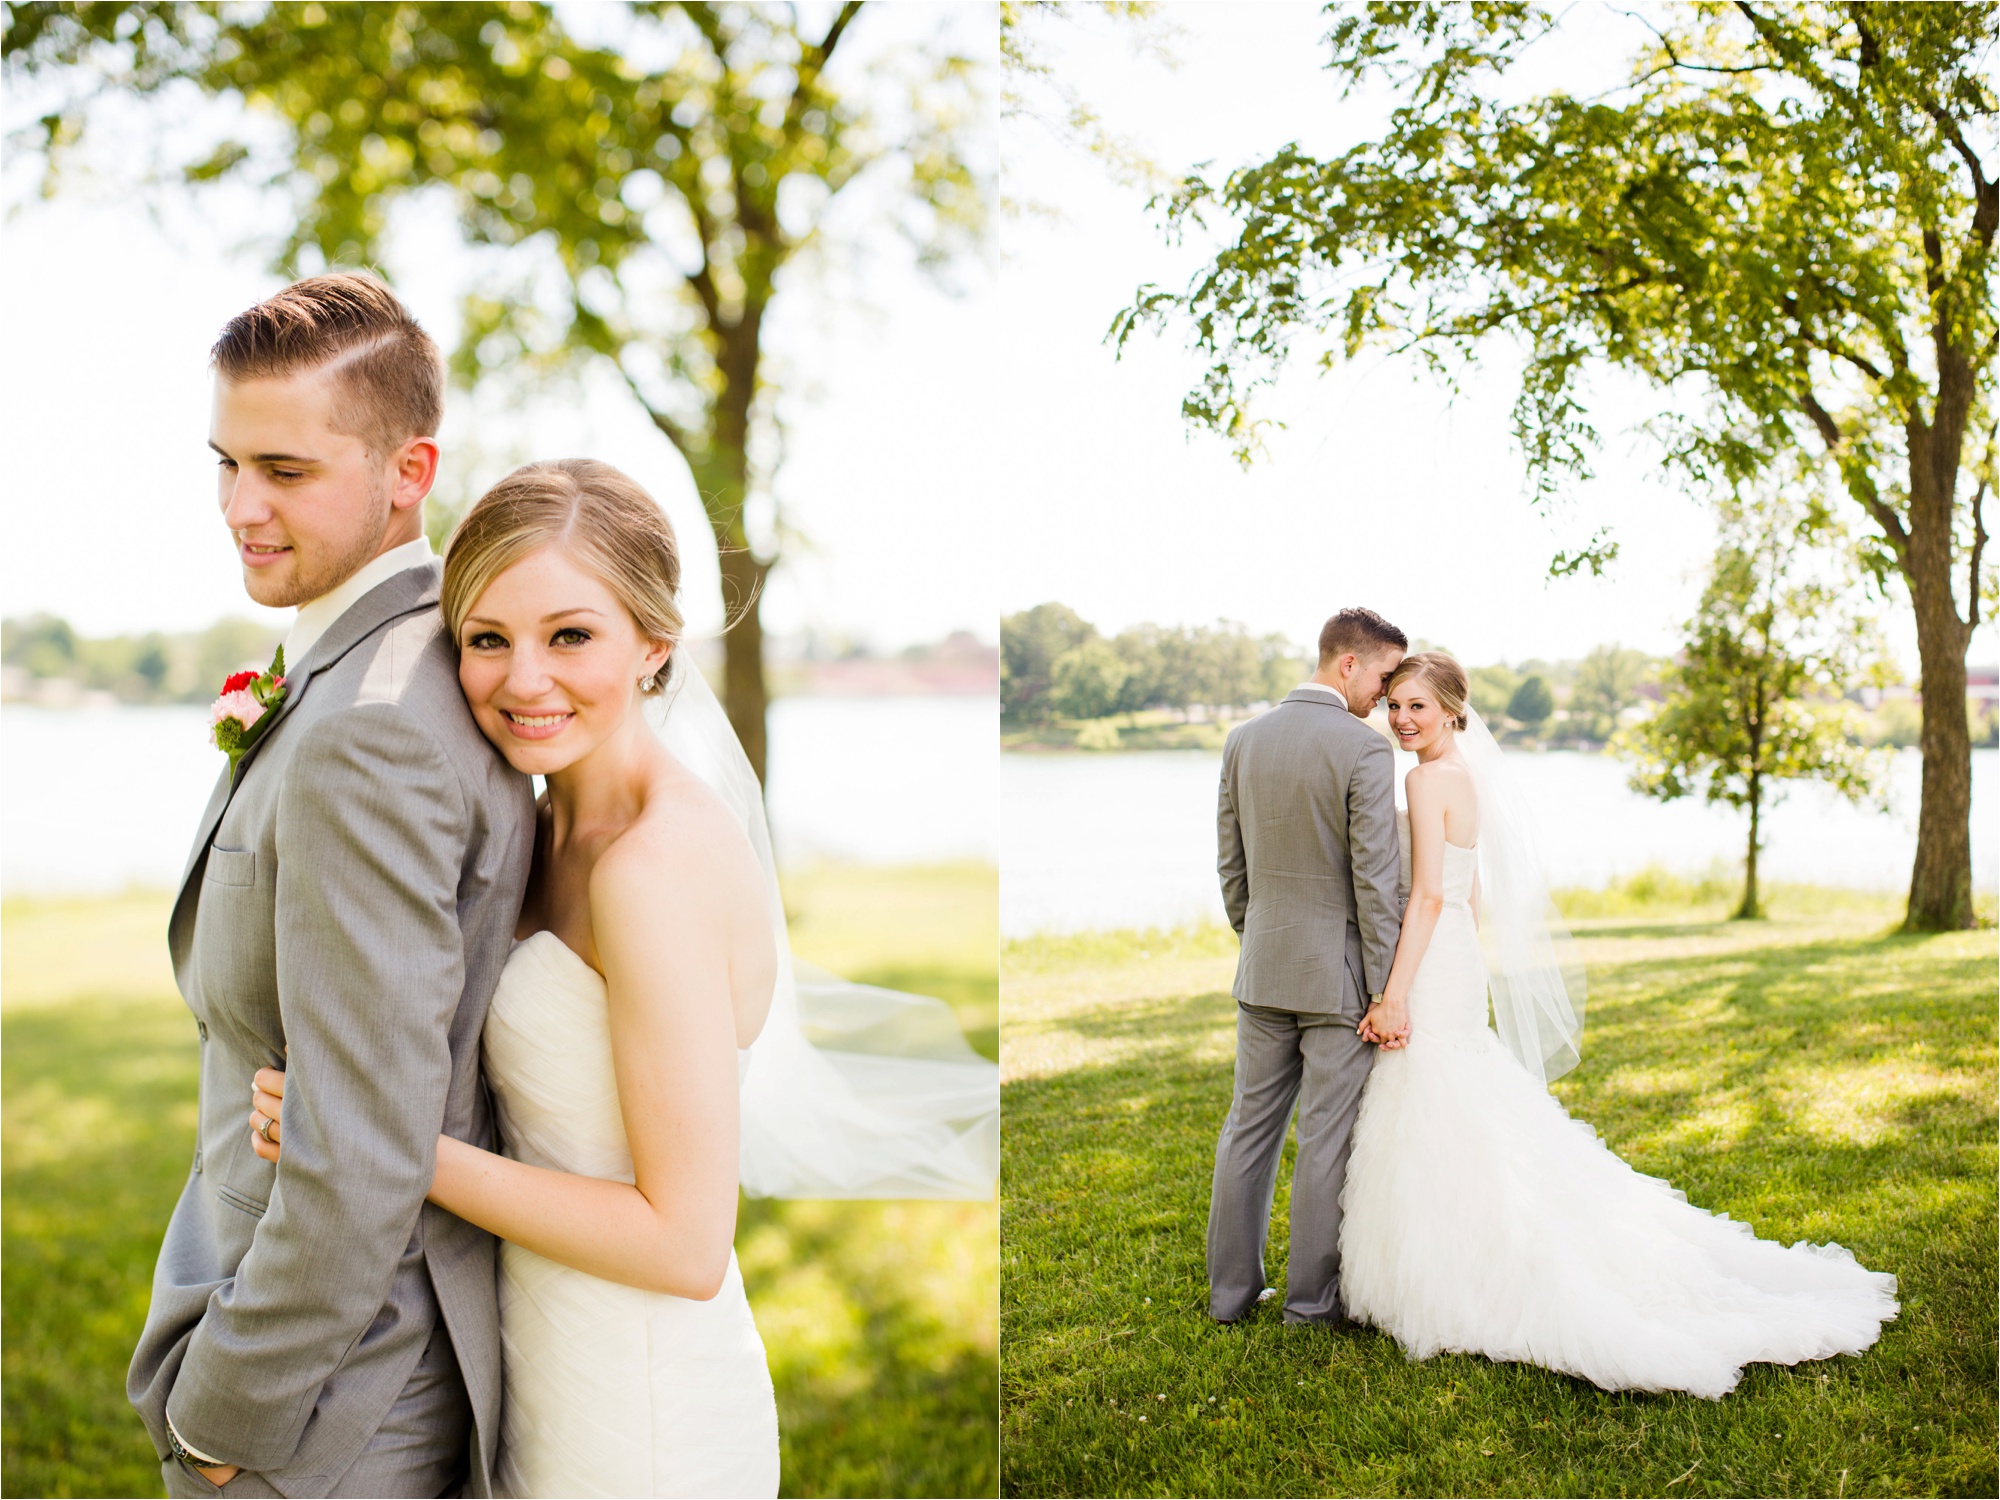 Caitlin and Luke Photography, Bloomington Normal Wedding Photographers, Illinois Wedding Photographers, Illinois Husband and Wife Wedding Photography Team_0316.jpg